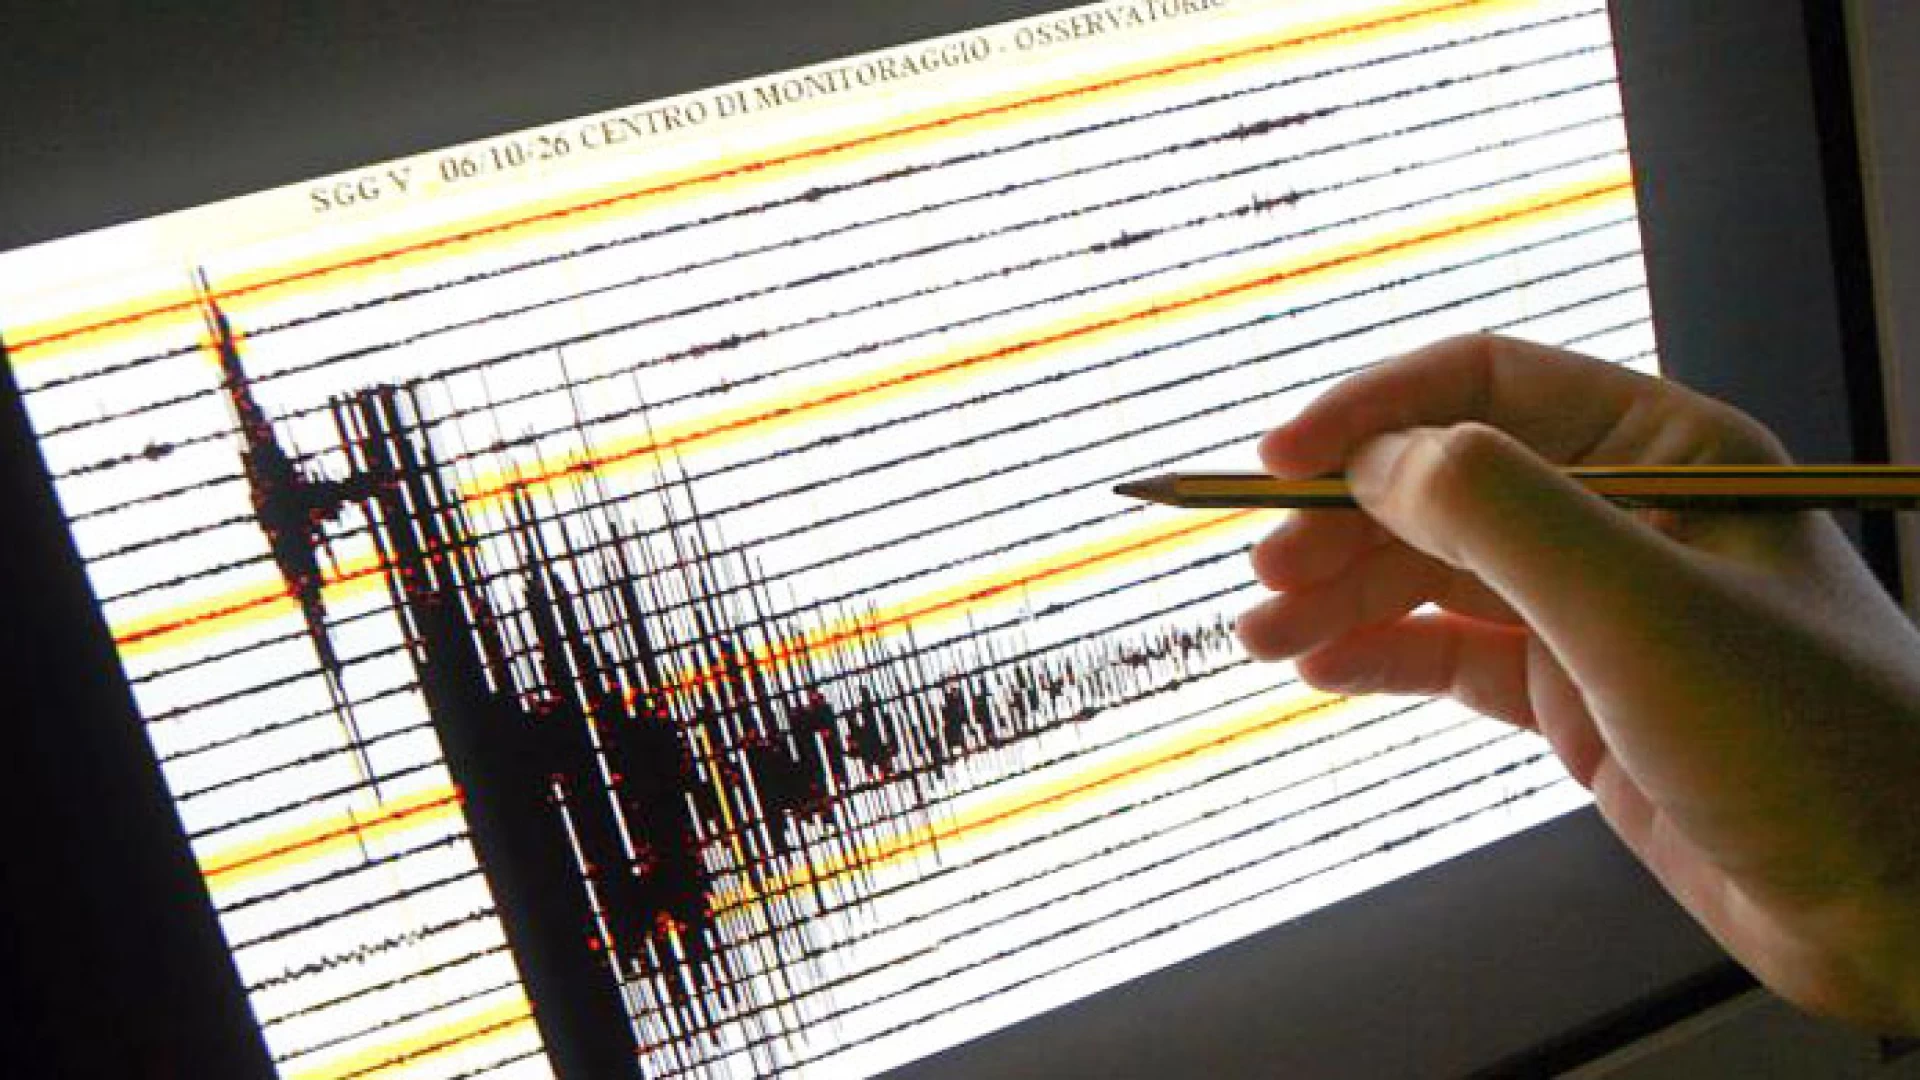 Macchia d’Isernia: sisma di magnitudo 2.3 con epicentro in paese. Cittadini impauriti ma nessun danno a cose e persone.